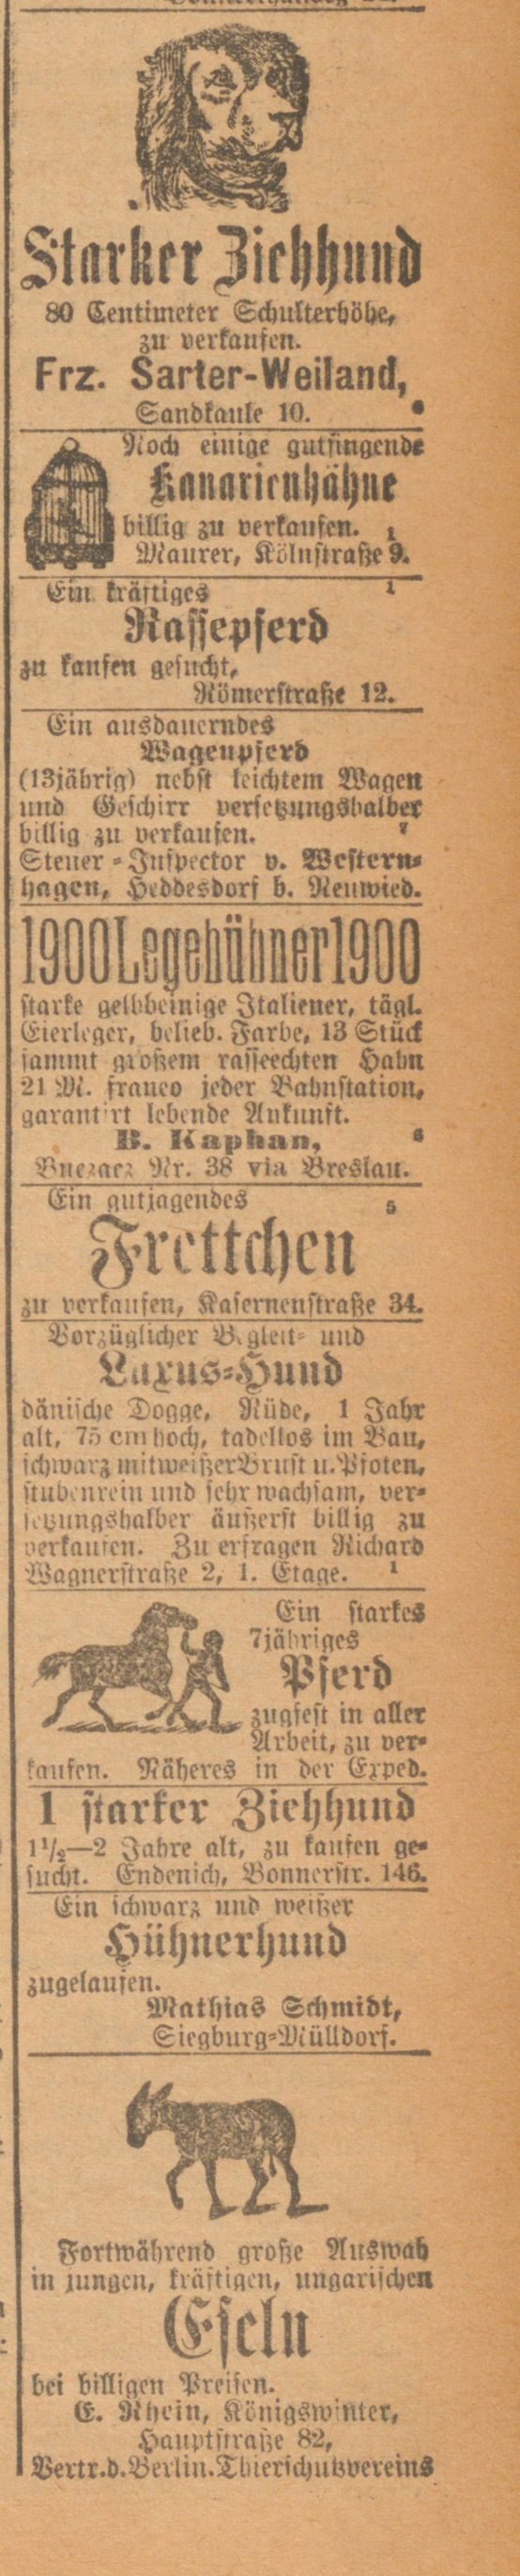 Anzeige im General-Anzeiger, Bonn, 9. Februar 1901